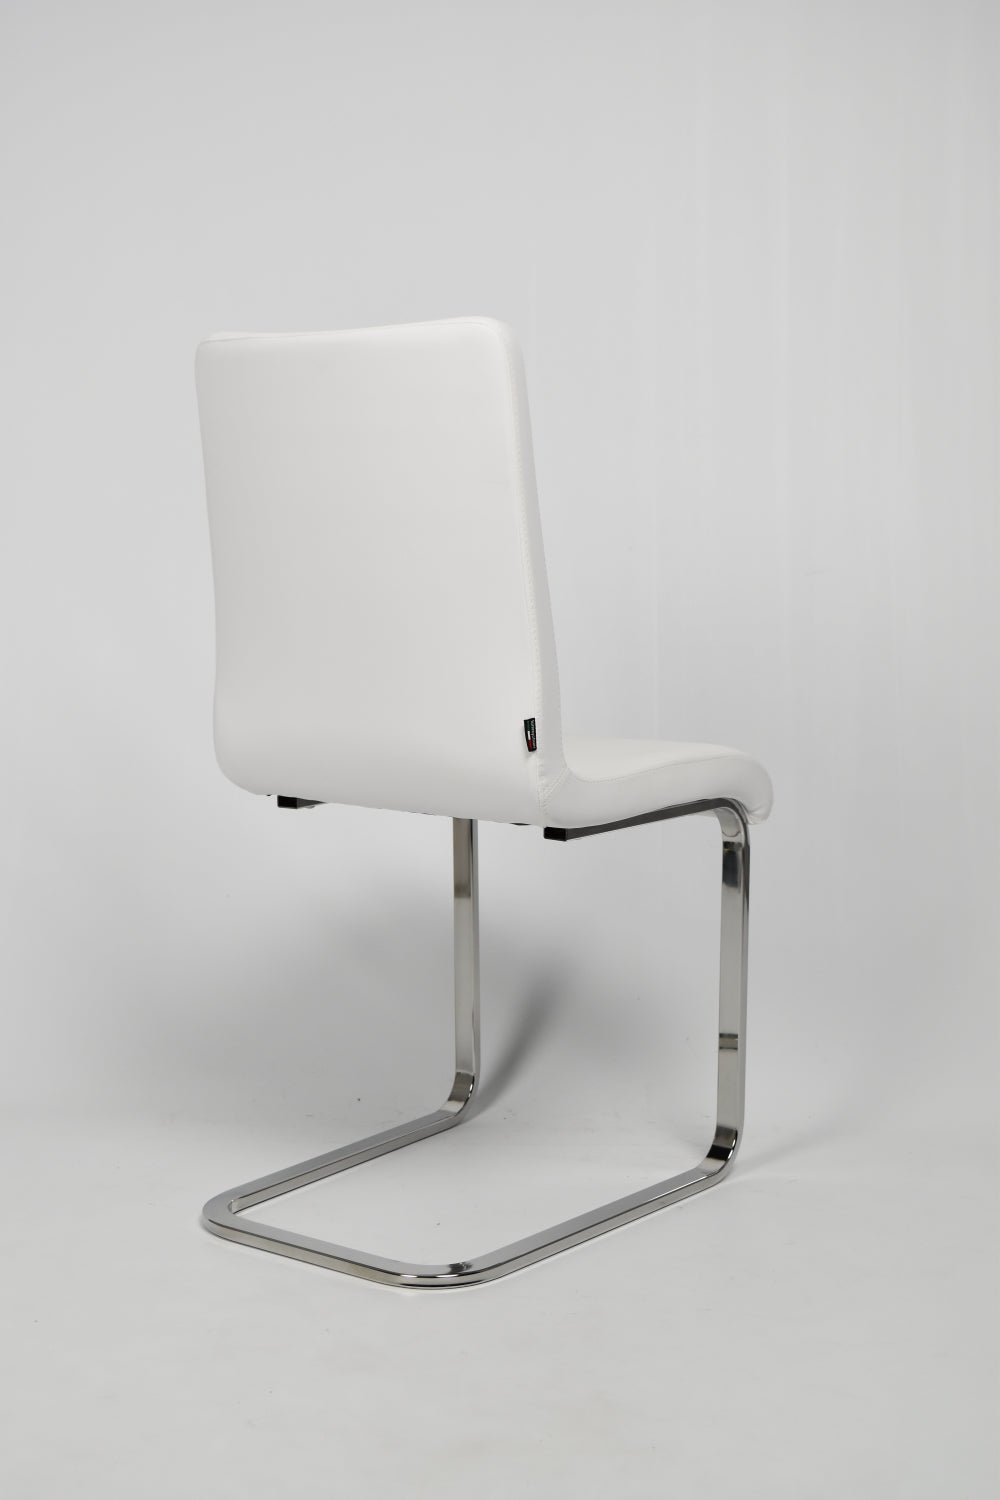 Tommychairs - Set 2 sillas Greta Cantilever con Patas de Acero Cromado de Alta Resistencian, Asiento en Madera Multicapa, tapizado en Polipiel Blanca